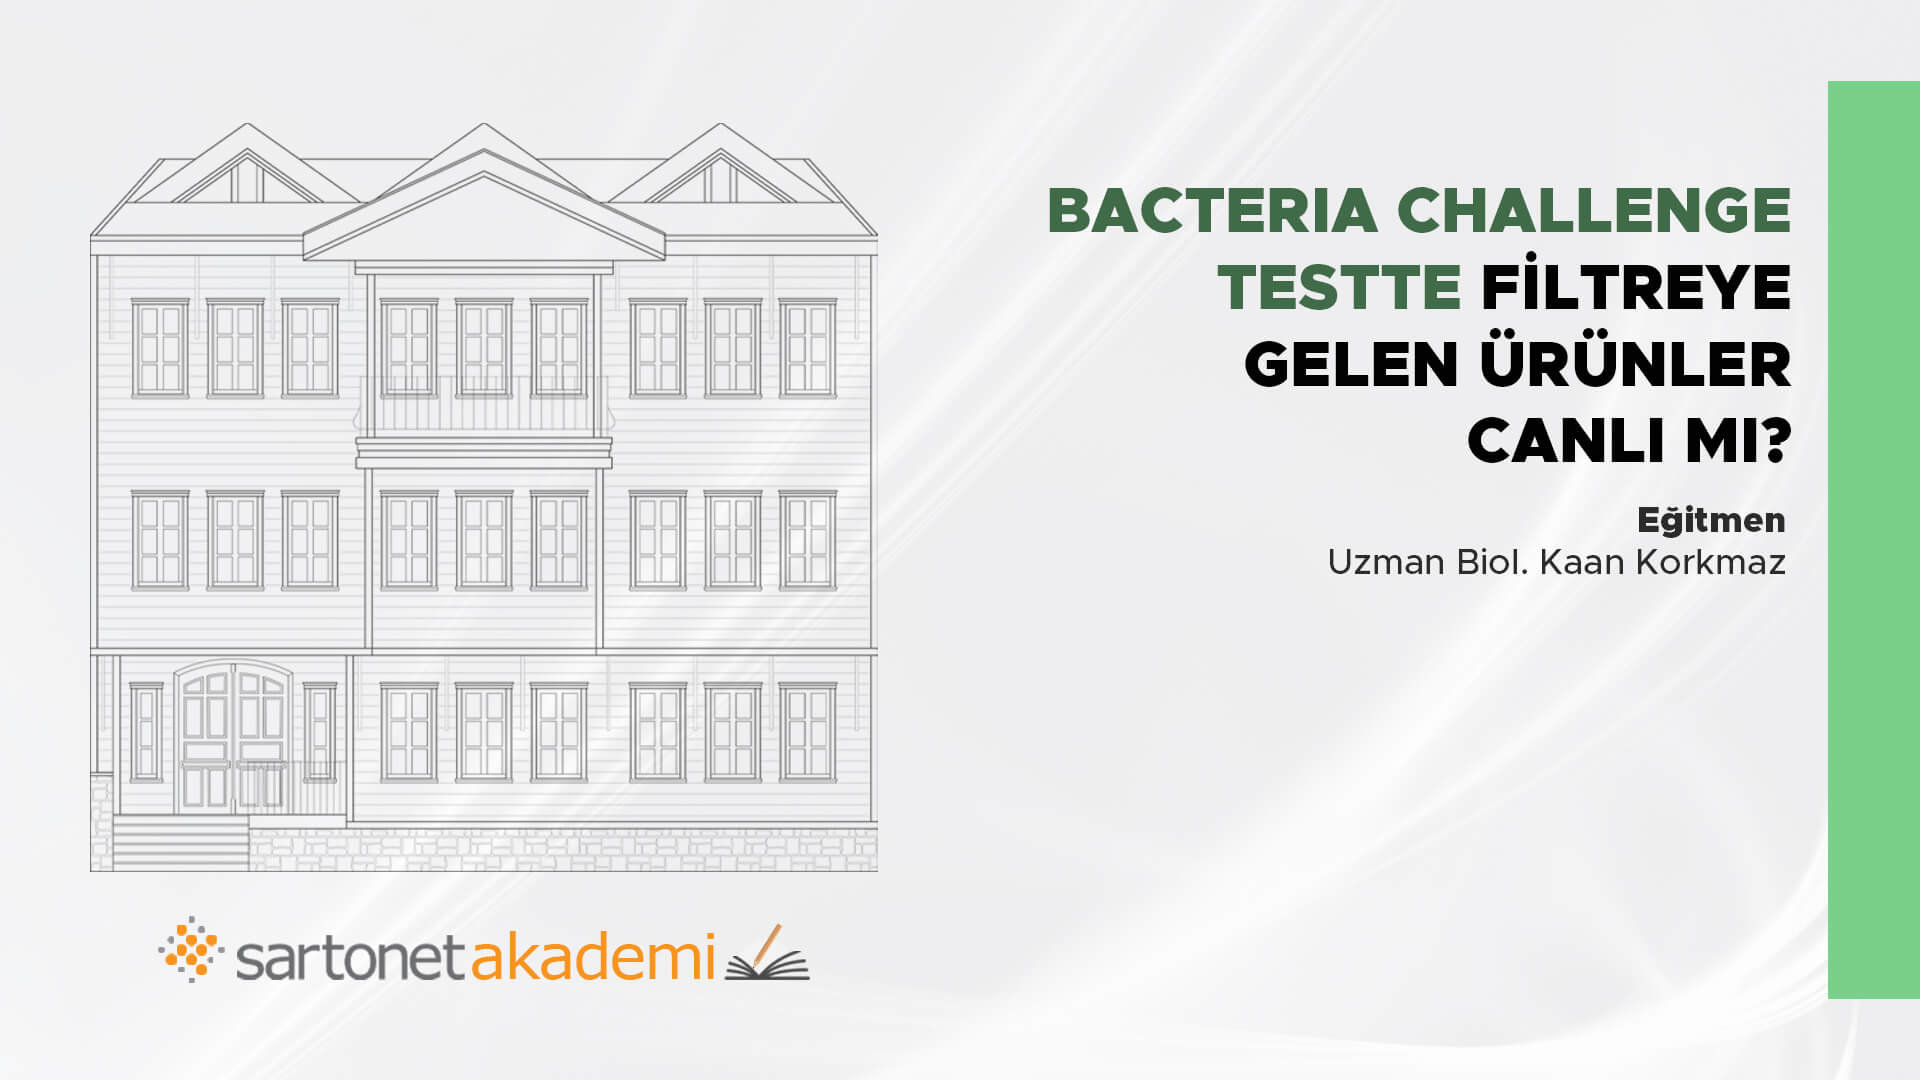 Bacteria Challenge Testte filtreye gelen ürünler canlı mı?